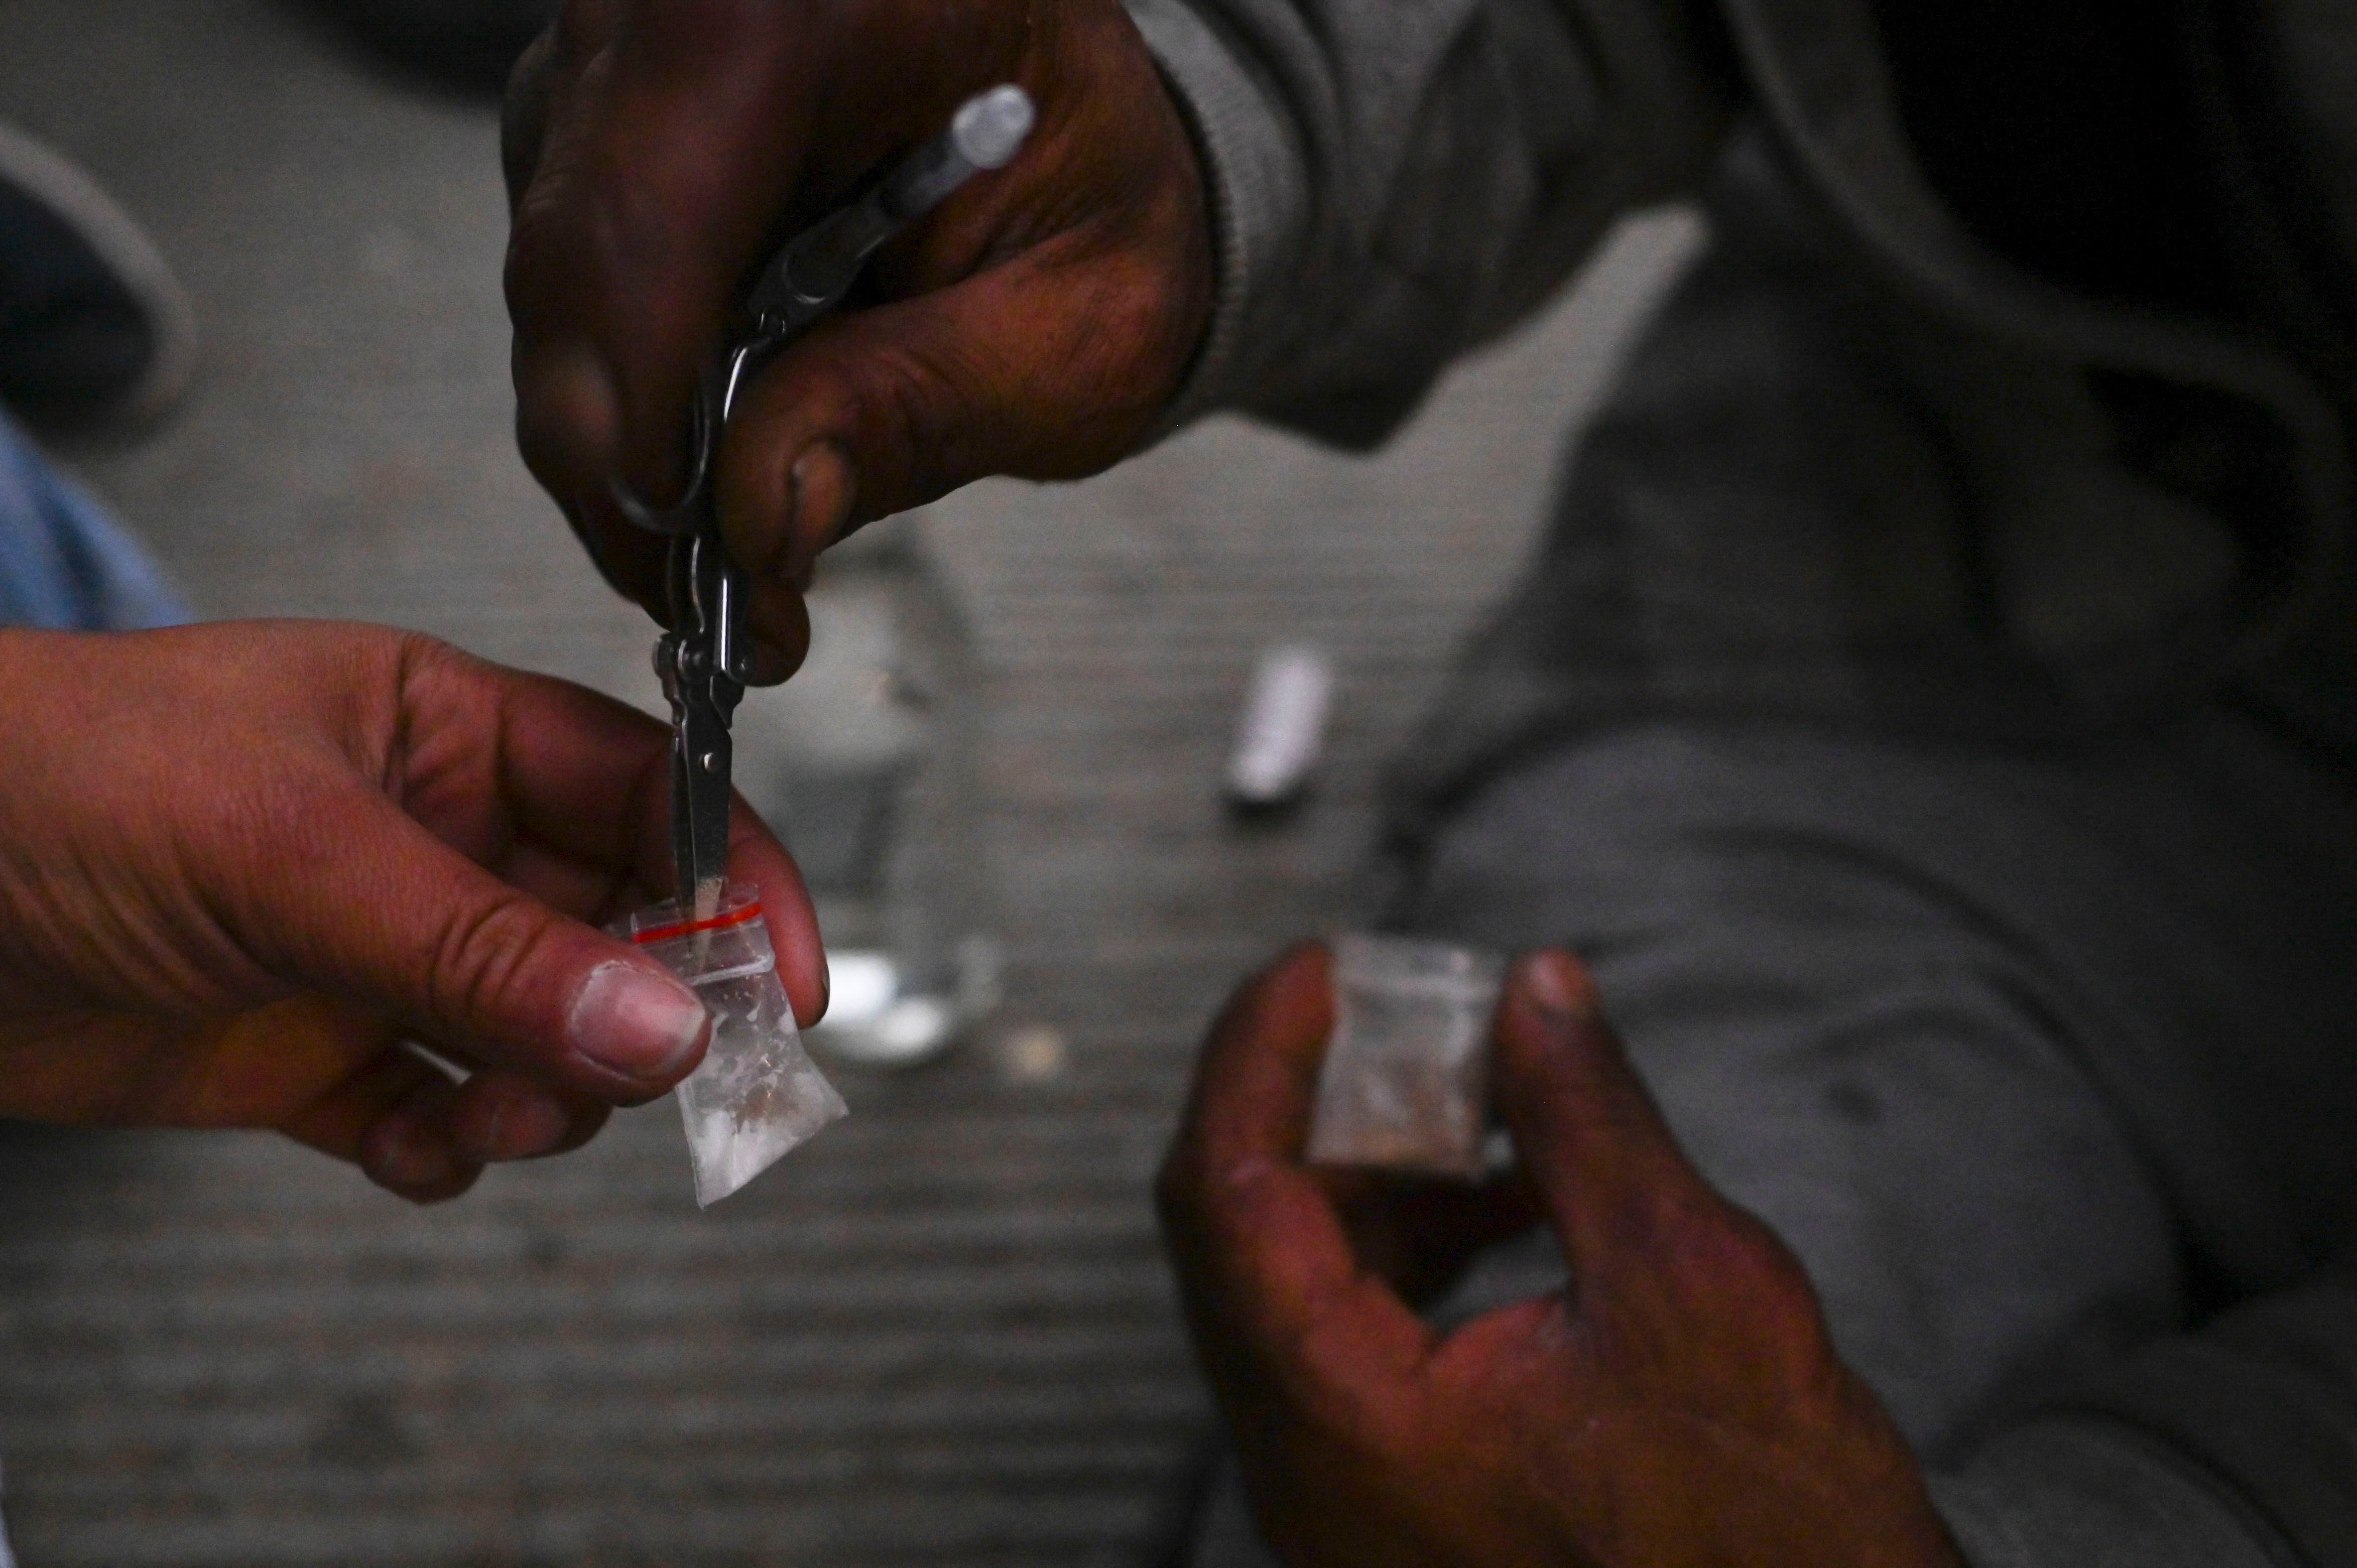 Los drogadictos preparan una dosis de Speedball, una mezcla de heroína y cocaína, en el centro de Medellín, Colombia.